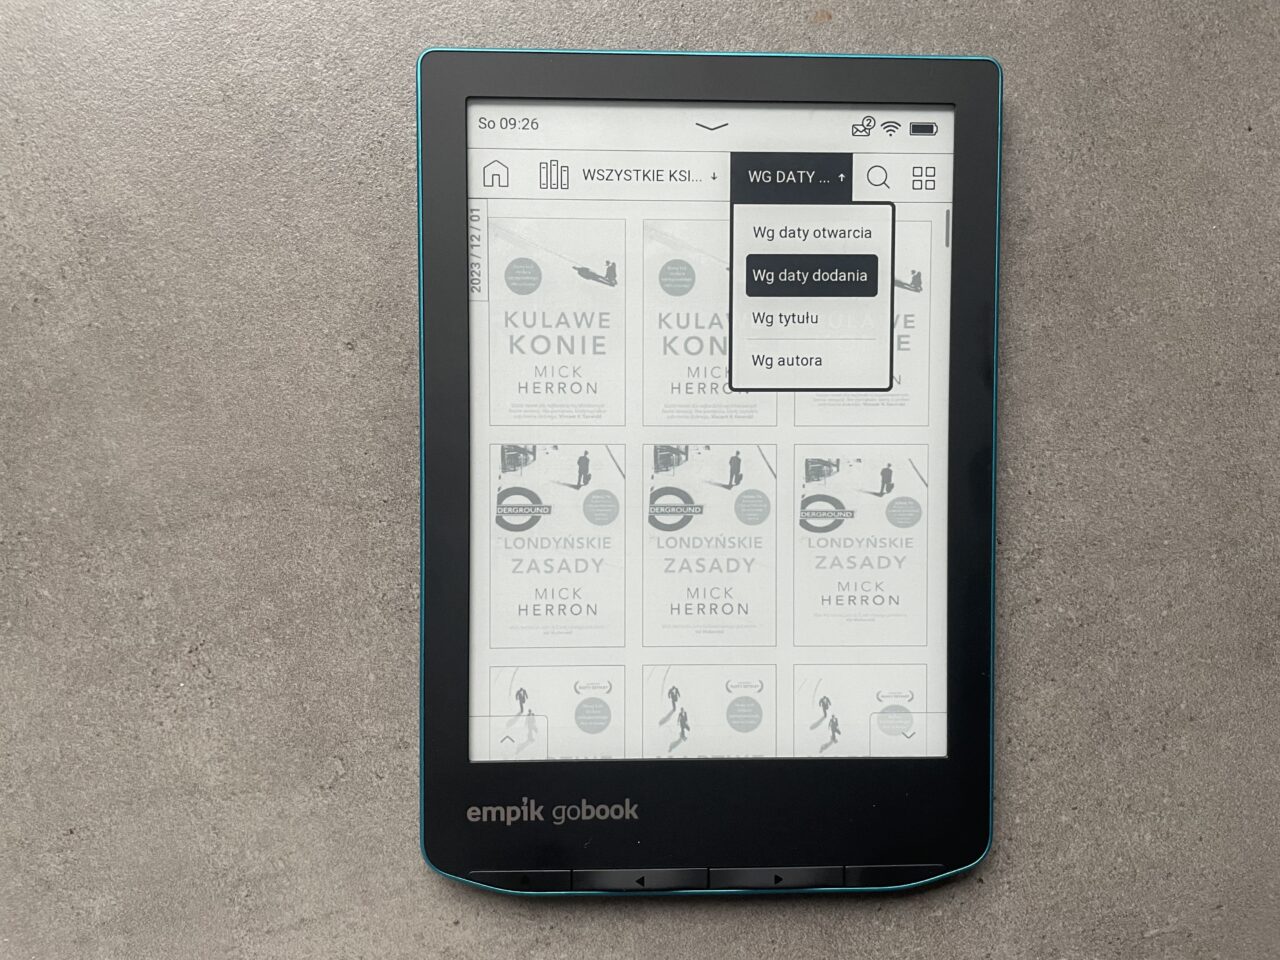 Czytnik ebooków marki Empik GoBook leżący na szarym podłożu, wyświetlający menu z opcjami sortowania książek i widocznym interfejsem użytkownika.